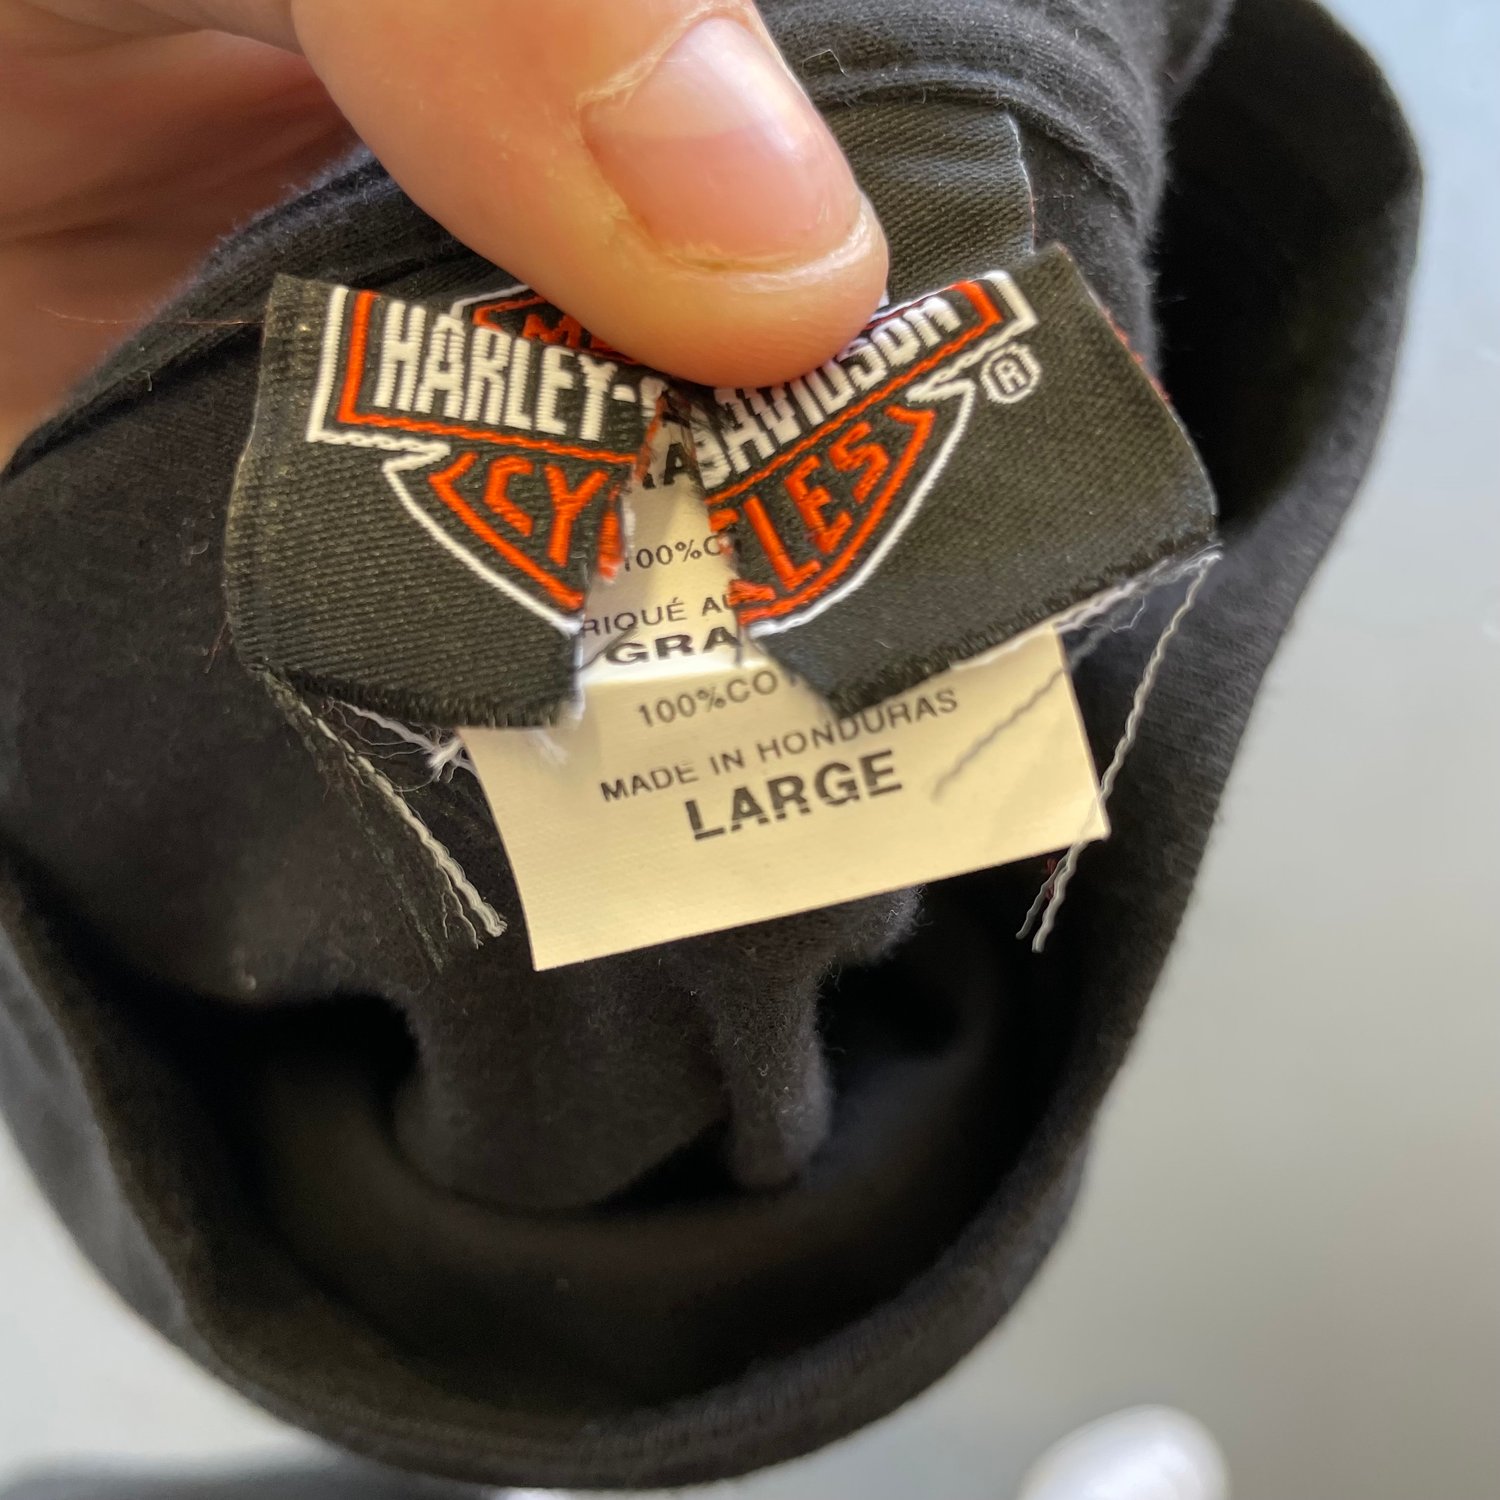 Image of Vintage Harley Davidson T-shirt size large 